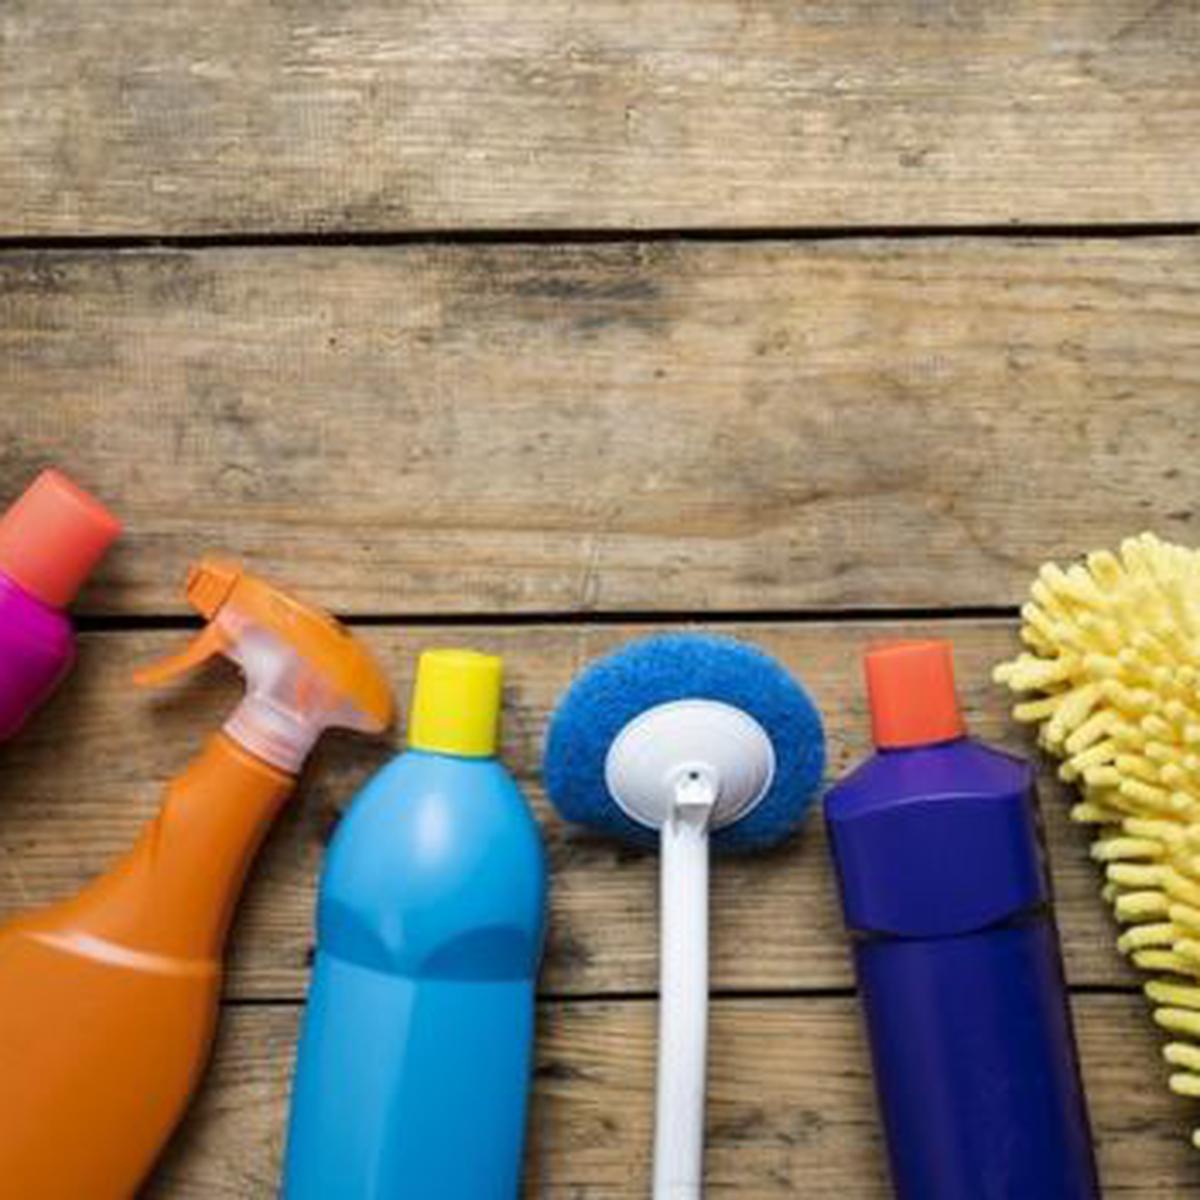 Los 4 errores más comunes que cometes al limpiar tu casa y que